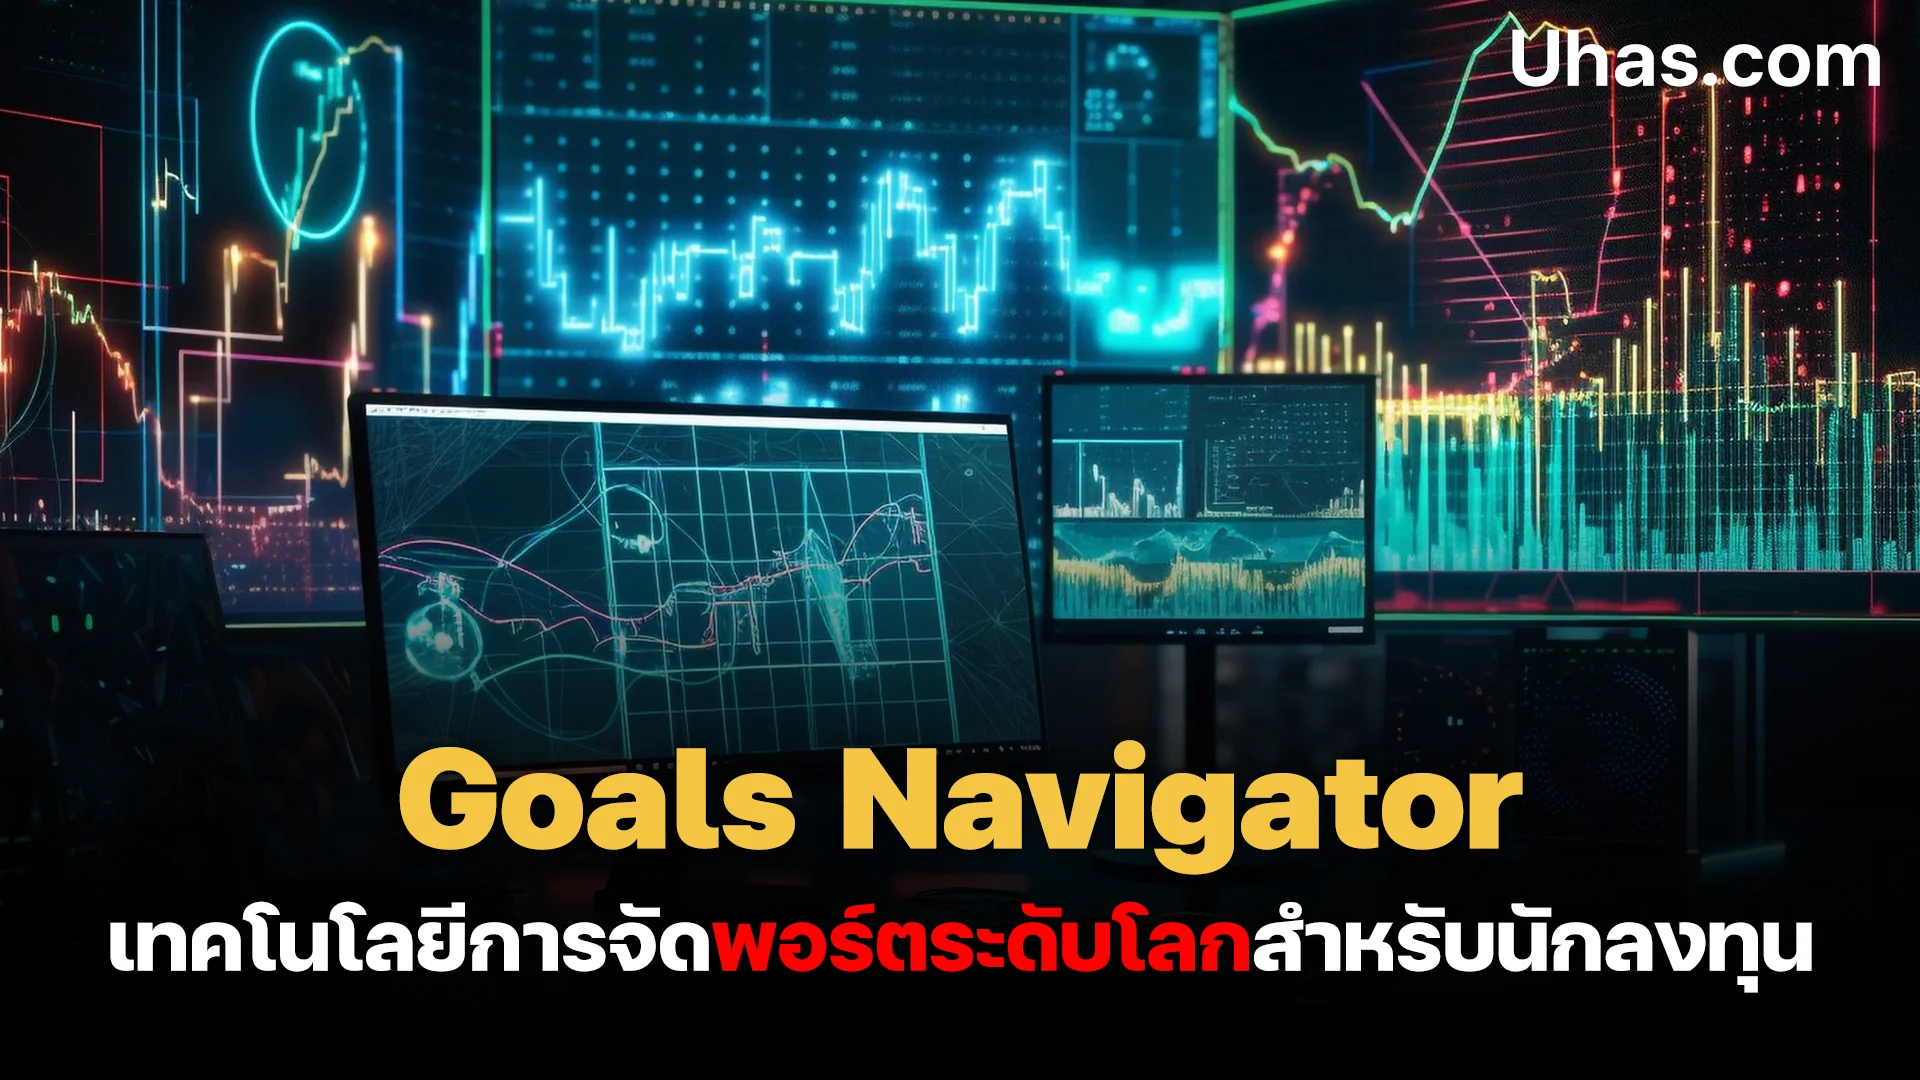 เทคโนโลยีการจัดพอร์ตระดับโลกด้วย Goals Navigator